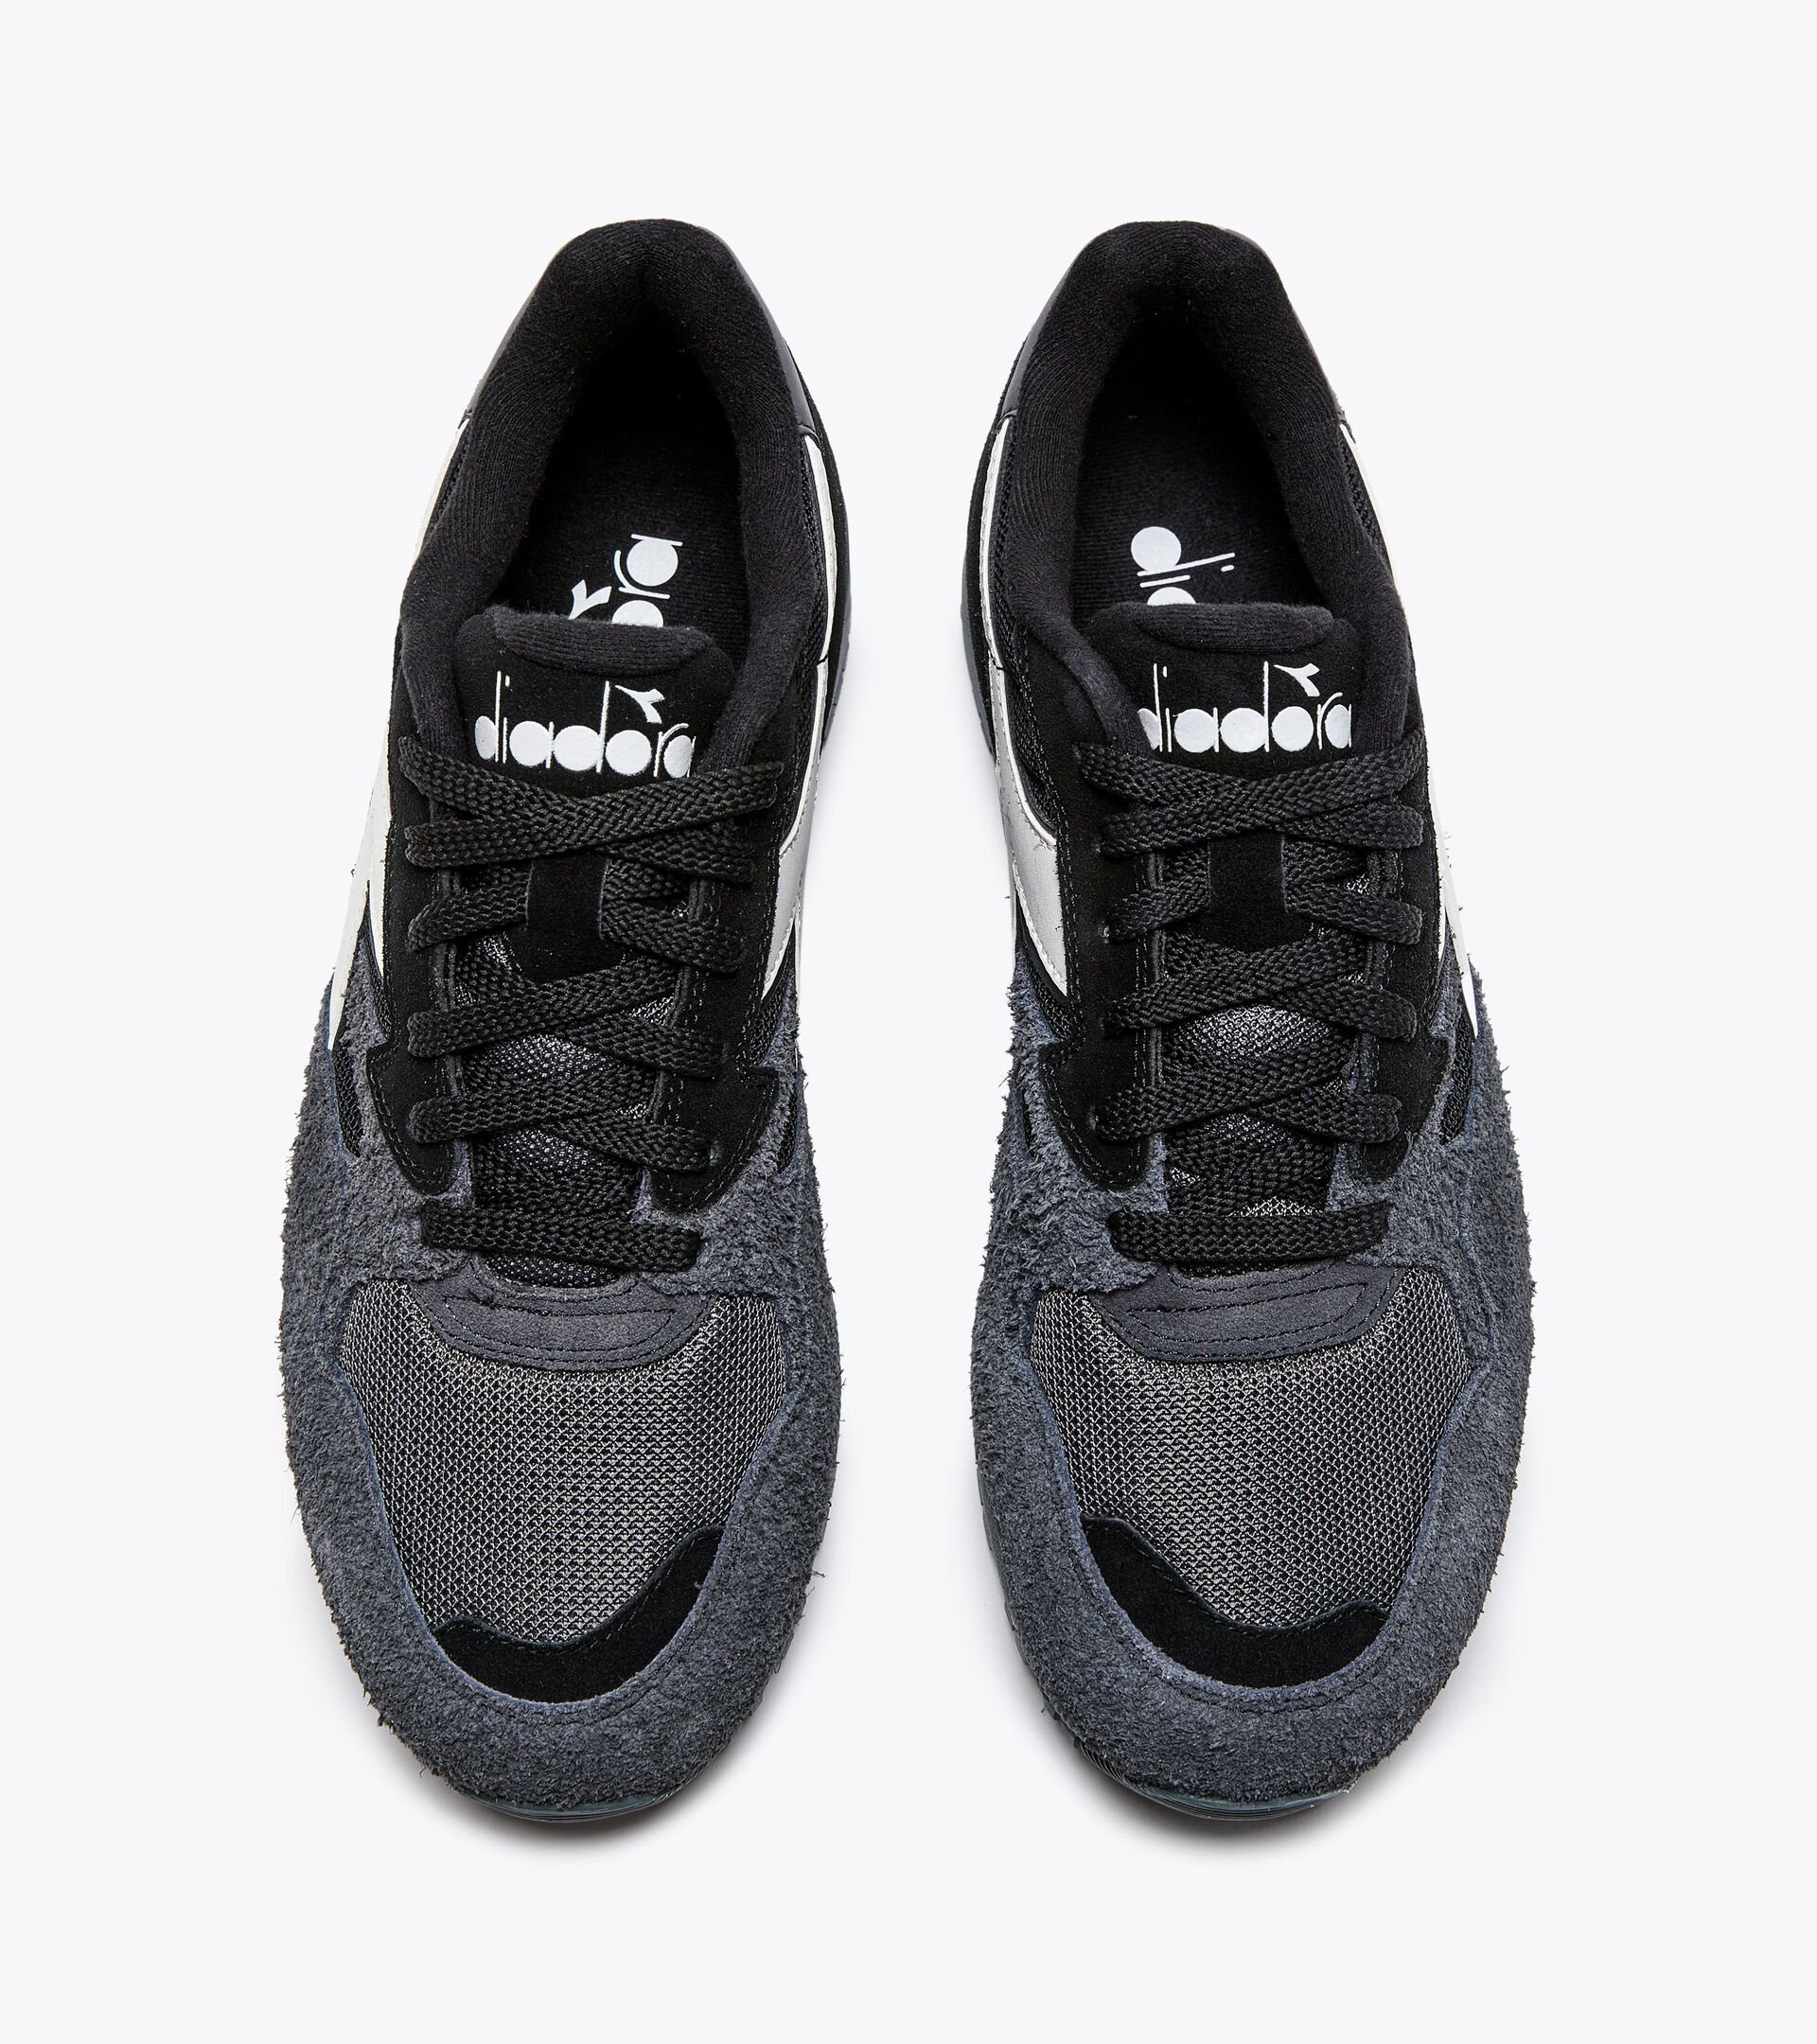 Sporty sneakers - Gender neutral N902 HAIRY SUEDE BLACK/BLACK - Diadora